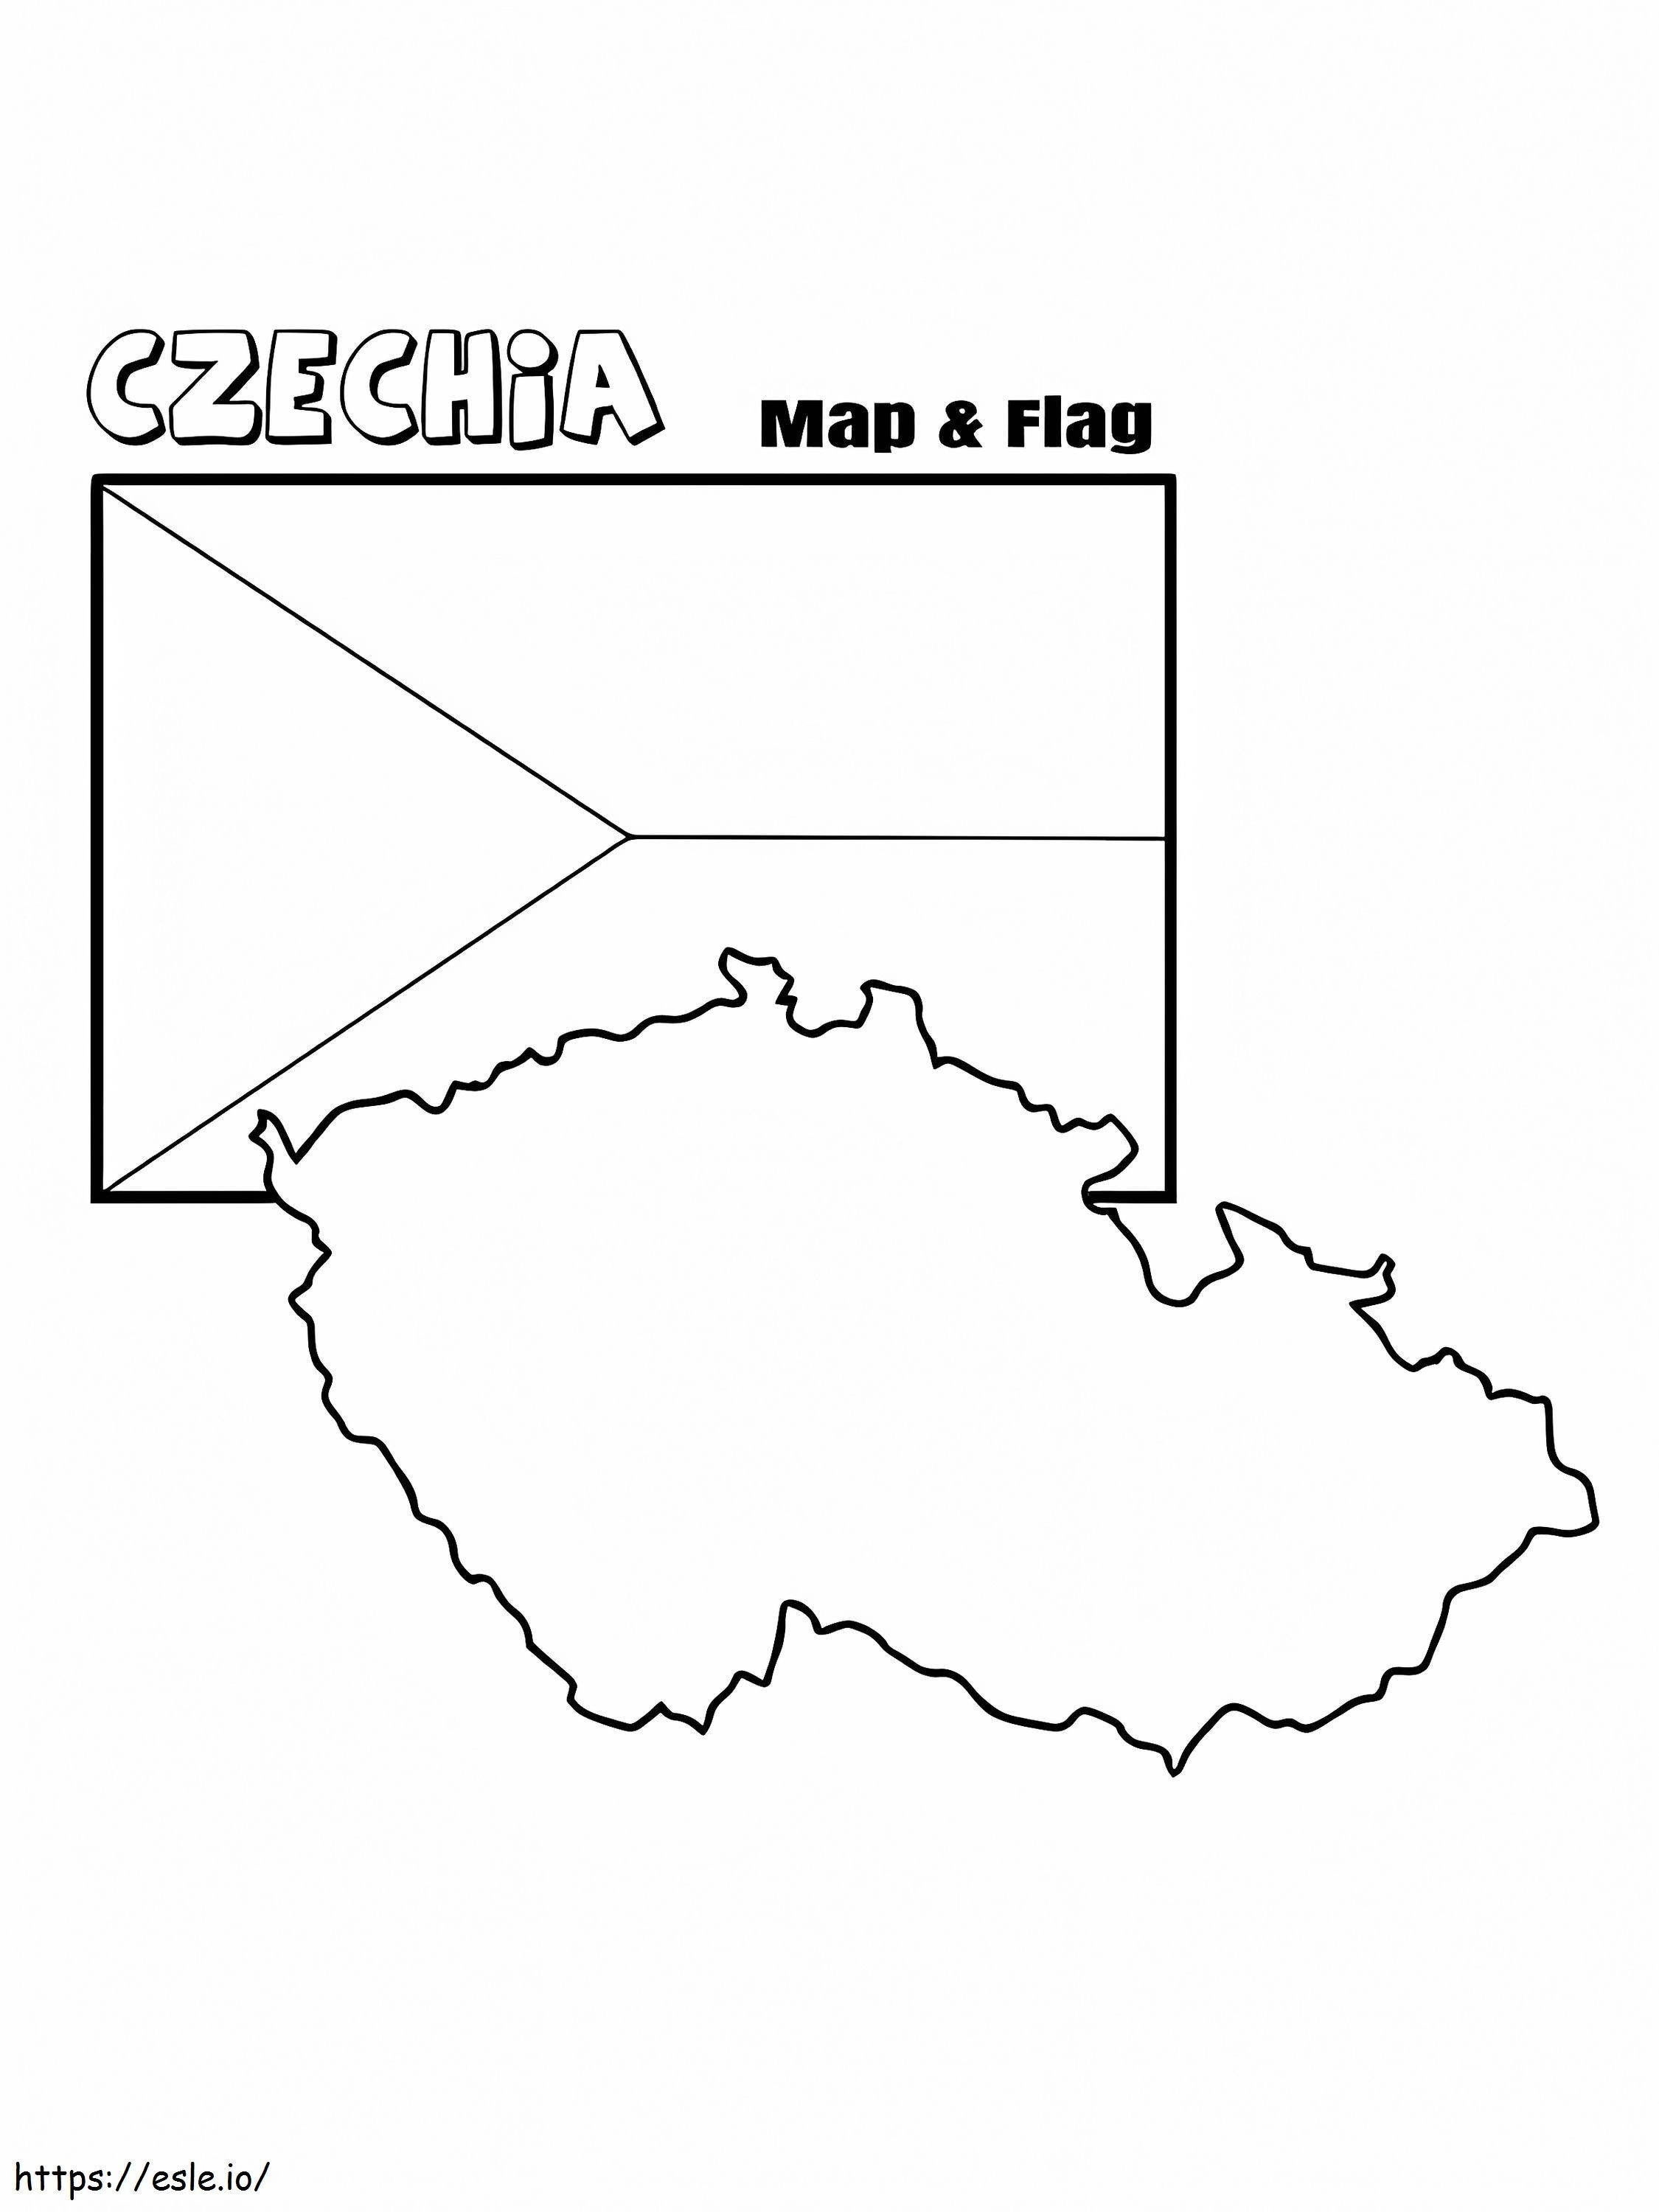 Chequia bandera y mapa para colorear